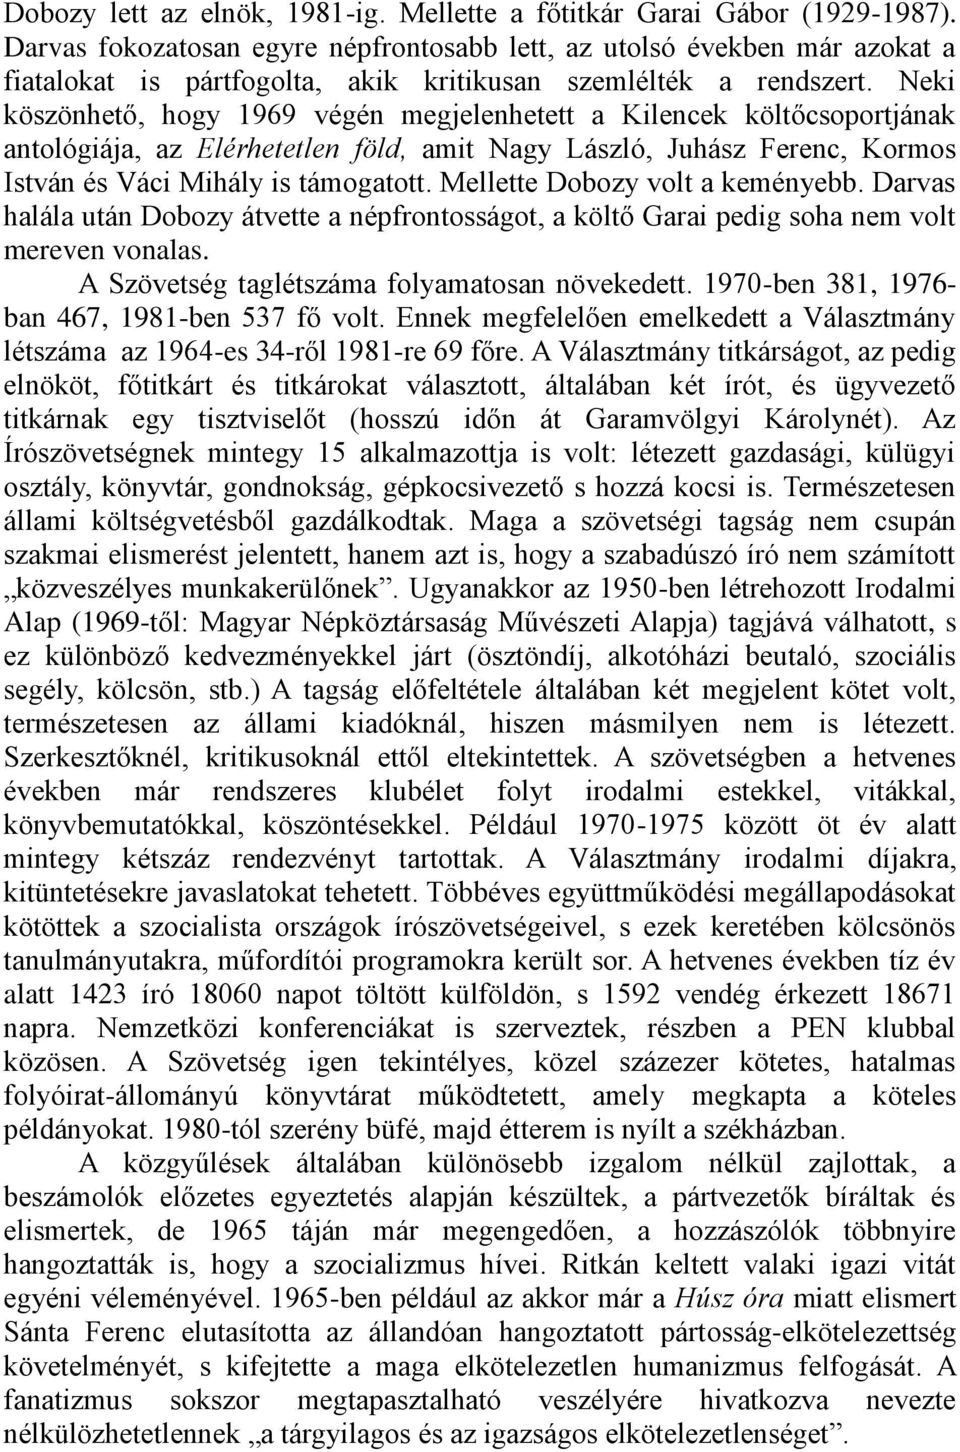 Neki köszönhető, hogy 1969 végén megjelenhetett a Kilencek költőcsoportjának antológiája, az Elérhetetlen föld, amit Nagy László, Juhász Ferenc, Kormos István és Váci Mihály is támogatott.